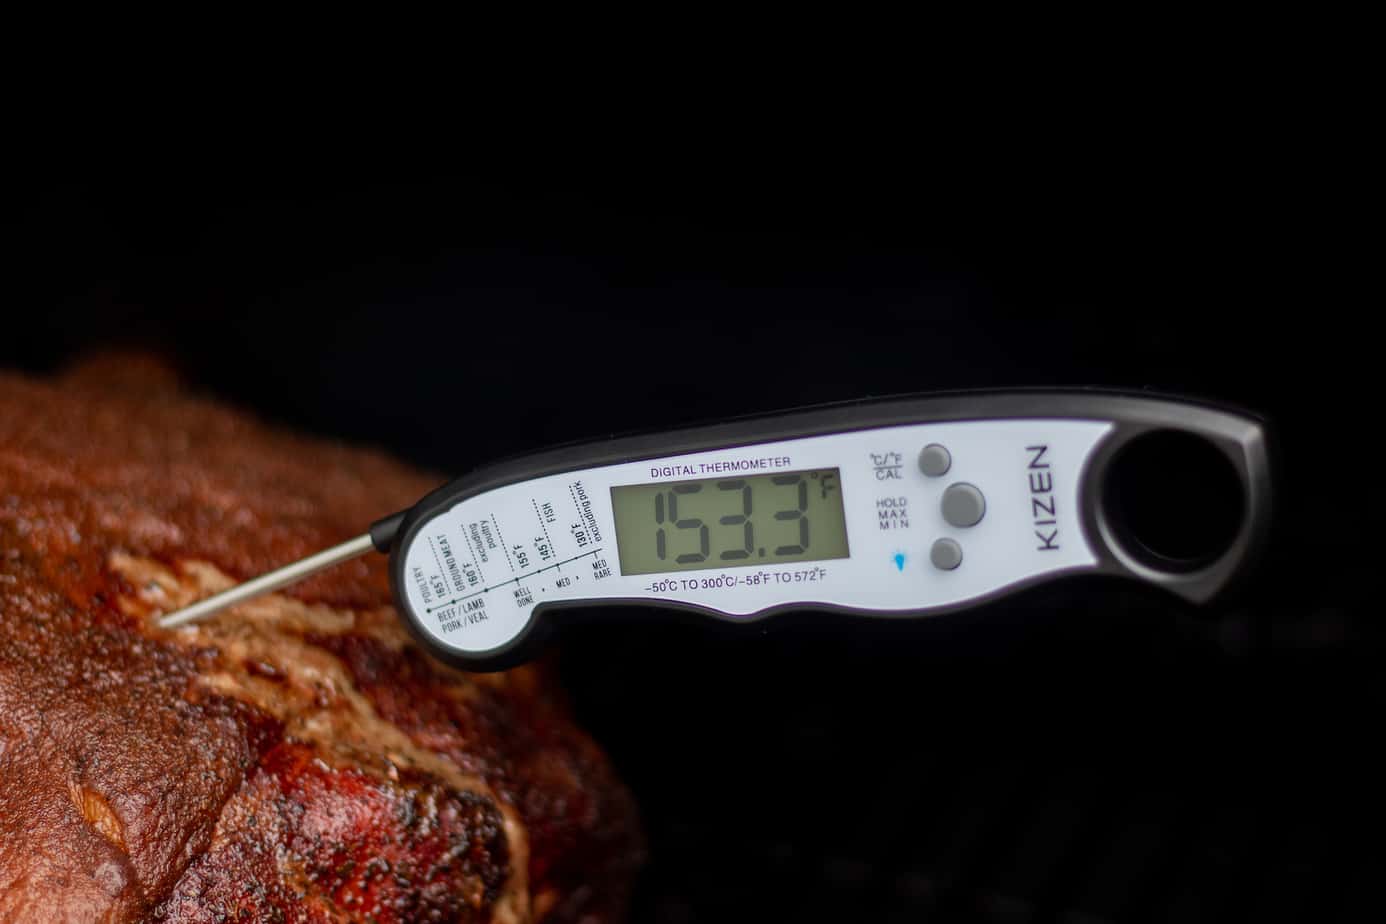 Generic Kizen Instant Read Meat Thermometer - Best Waterproof